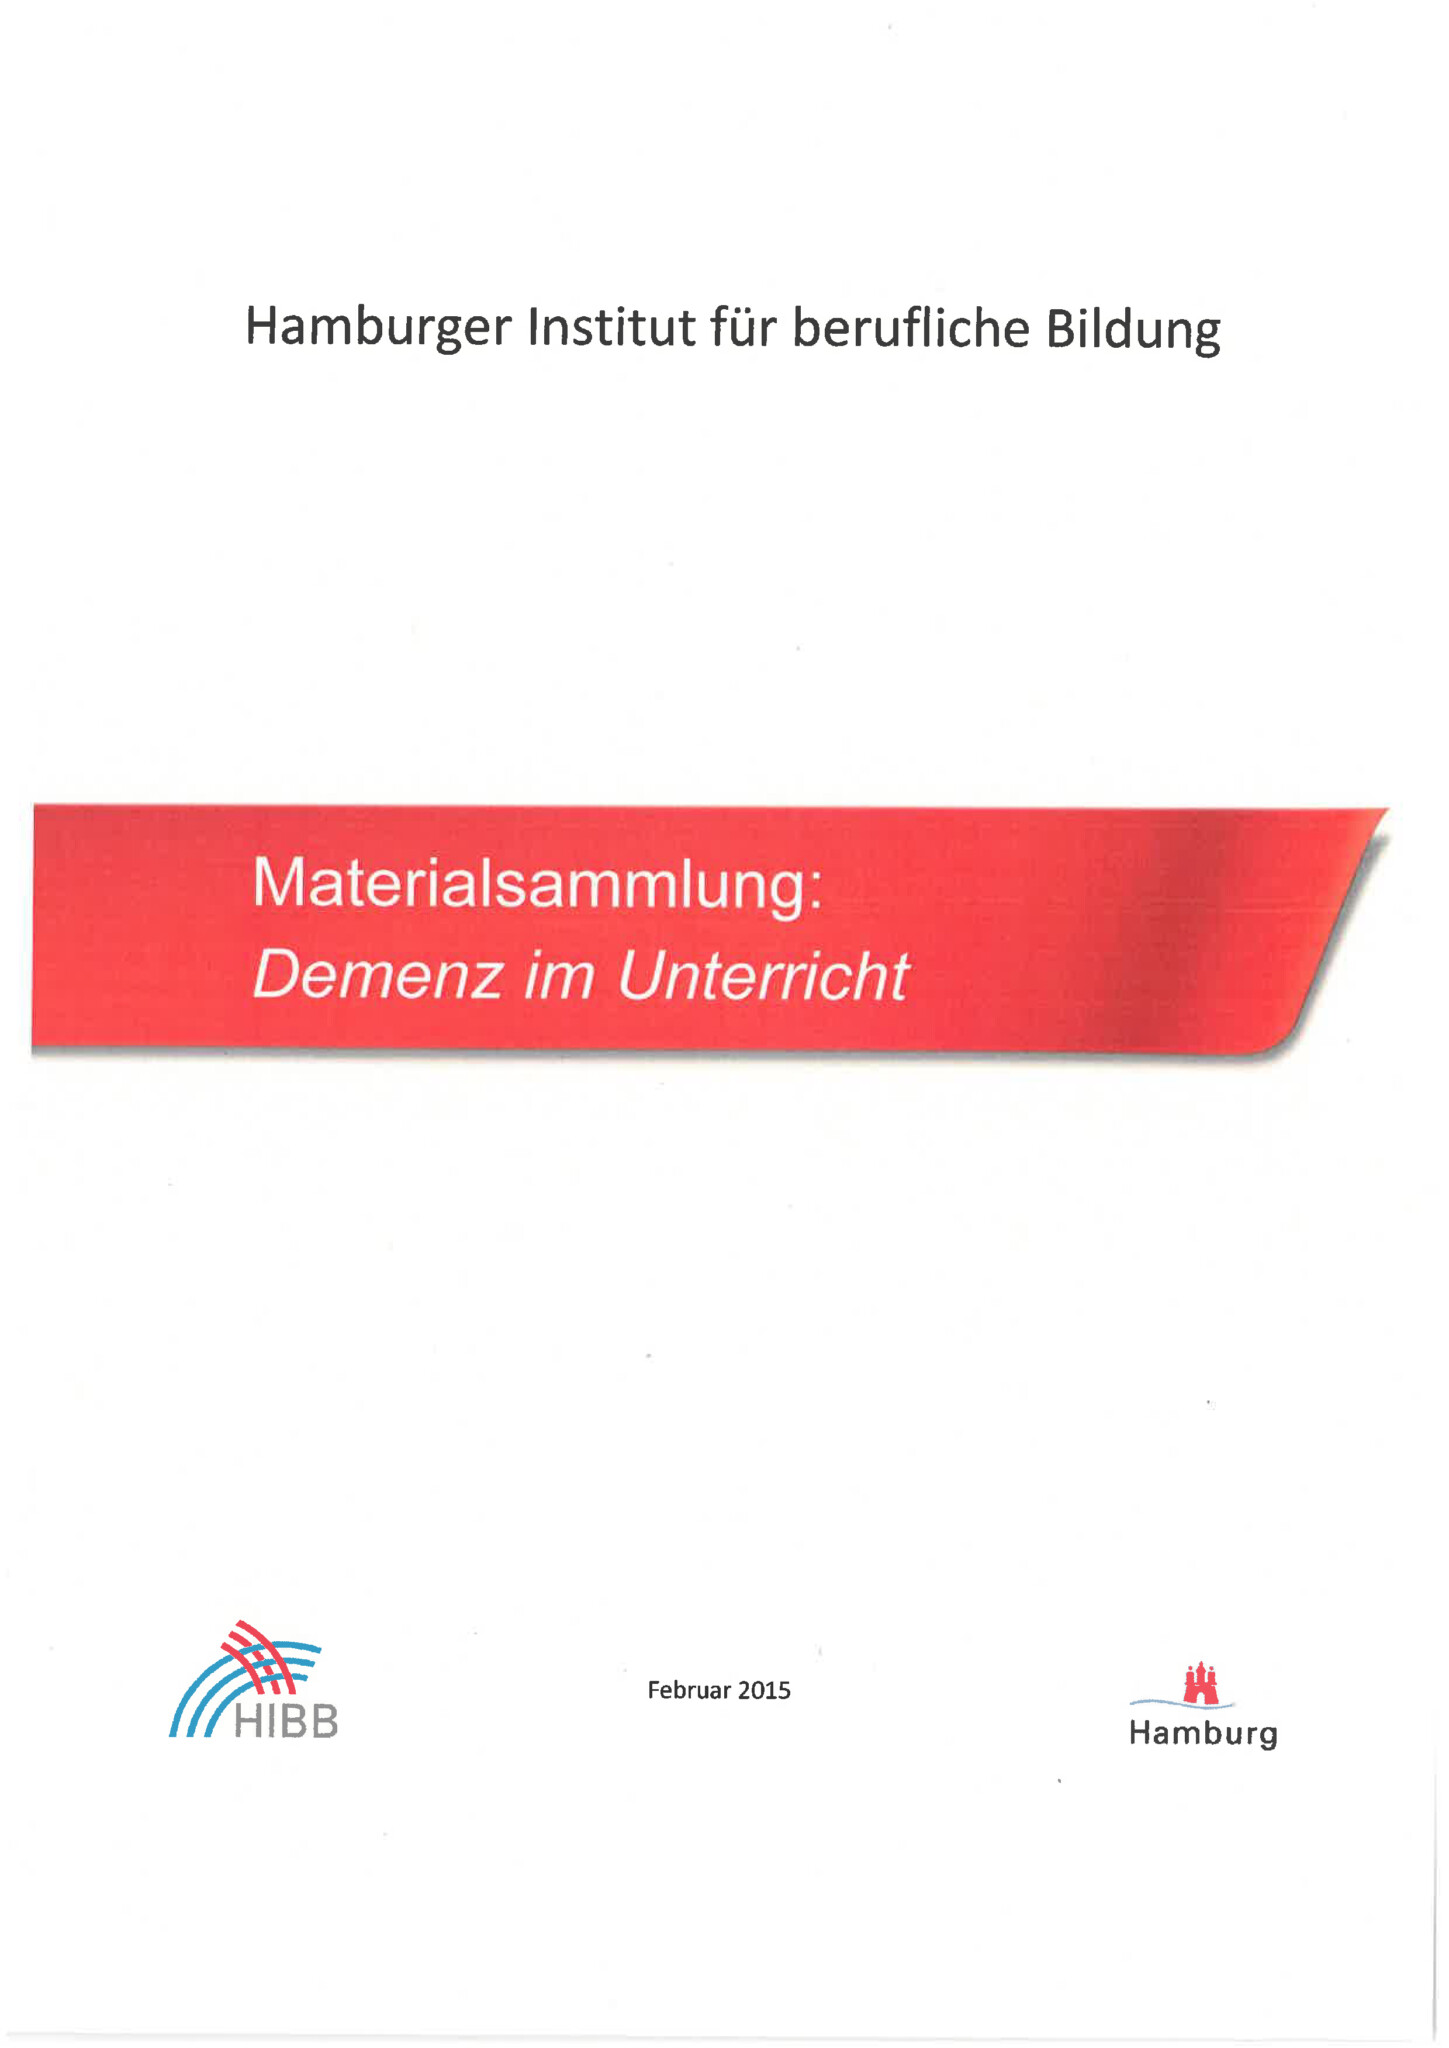 Das Bild zeigt die Titelseite der Broschüre. Auf weißem Untergrund steht oben "Hamburger Institut für Berufliche Bildung". In der Mitte auf rotem Grund, der einem Schiffsbug nachempfunden ist, der Titel der Broschüre. Unten sind die Logos des HIBB und von Hamburg und das Erscheinungsdatum Februar 2015.